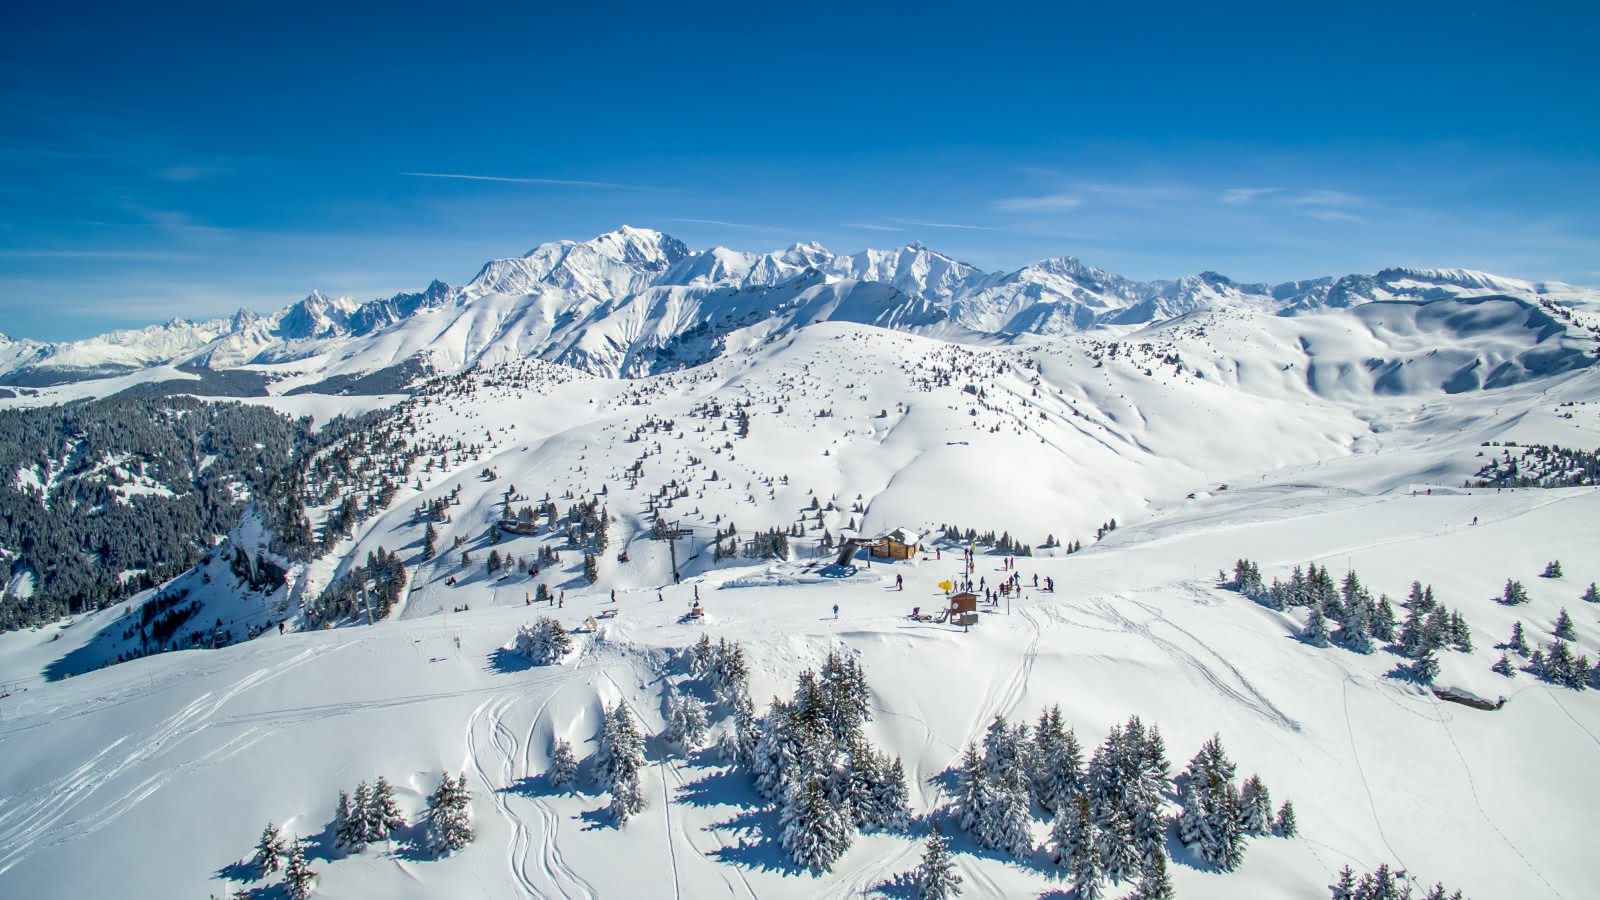 Sommet de Ban Rouge avec vue à 360° sur le Mont-Blanc, le beaufortain et les Aravis